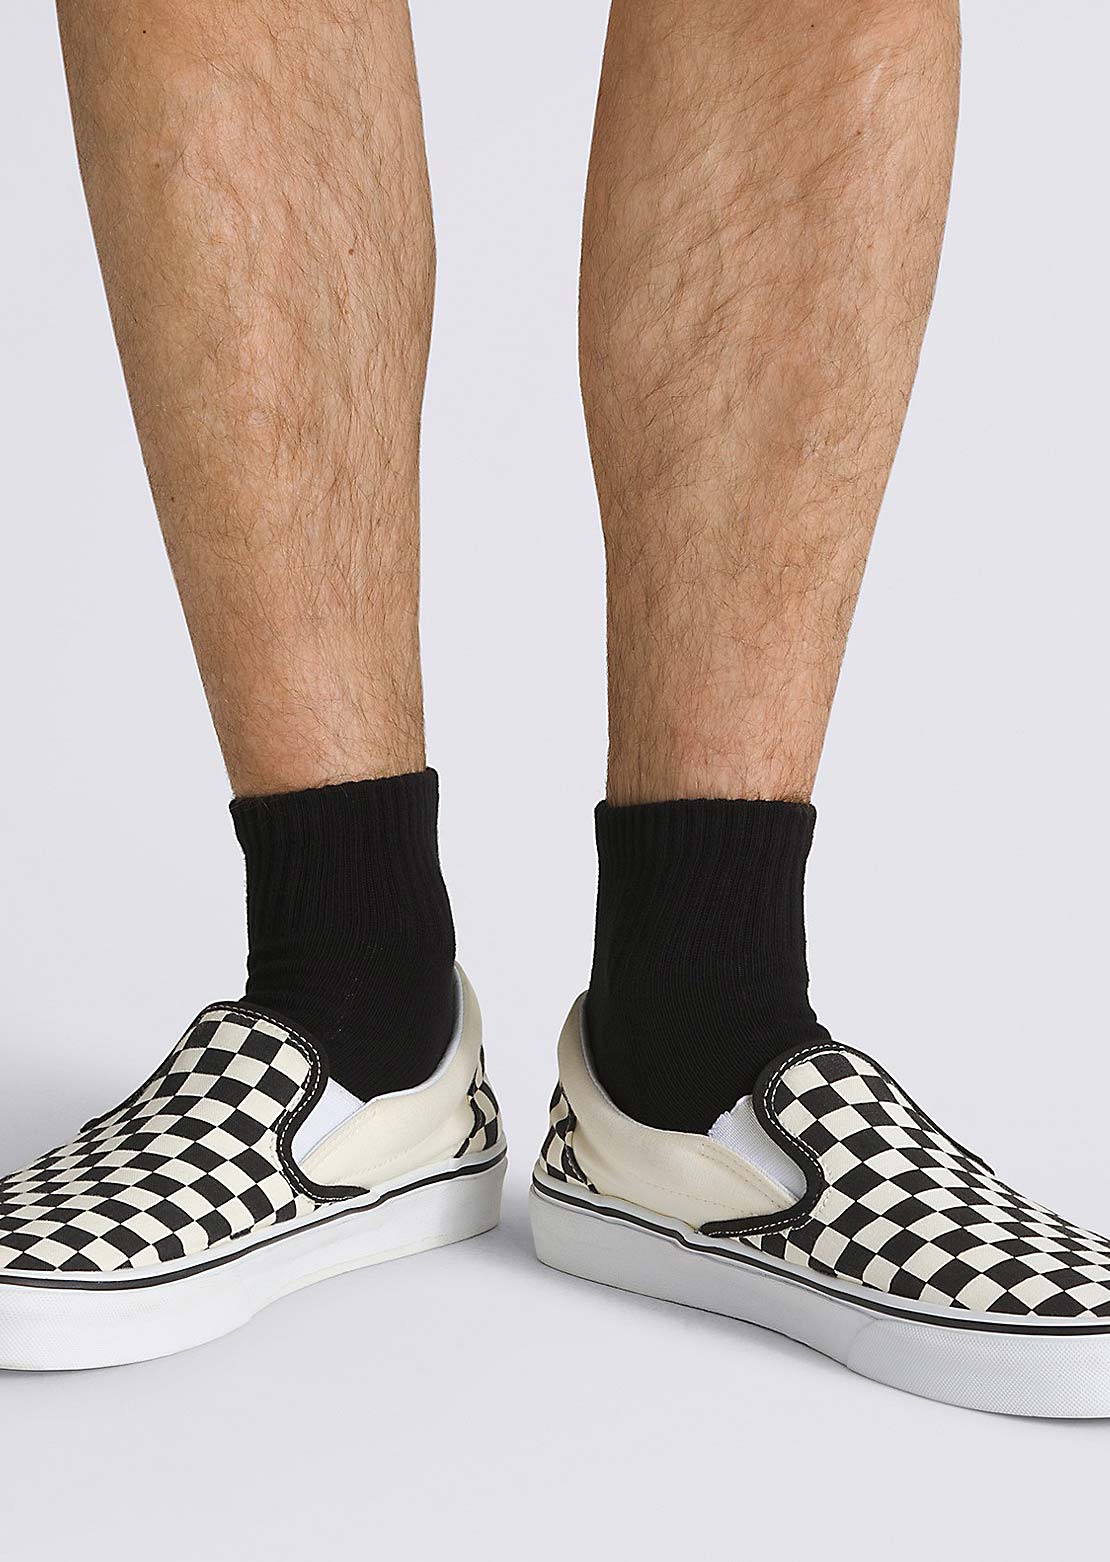 Vans Men&#39;s Classic Ankle Socks White/Black